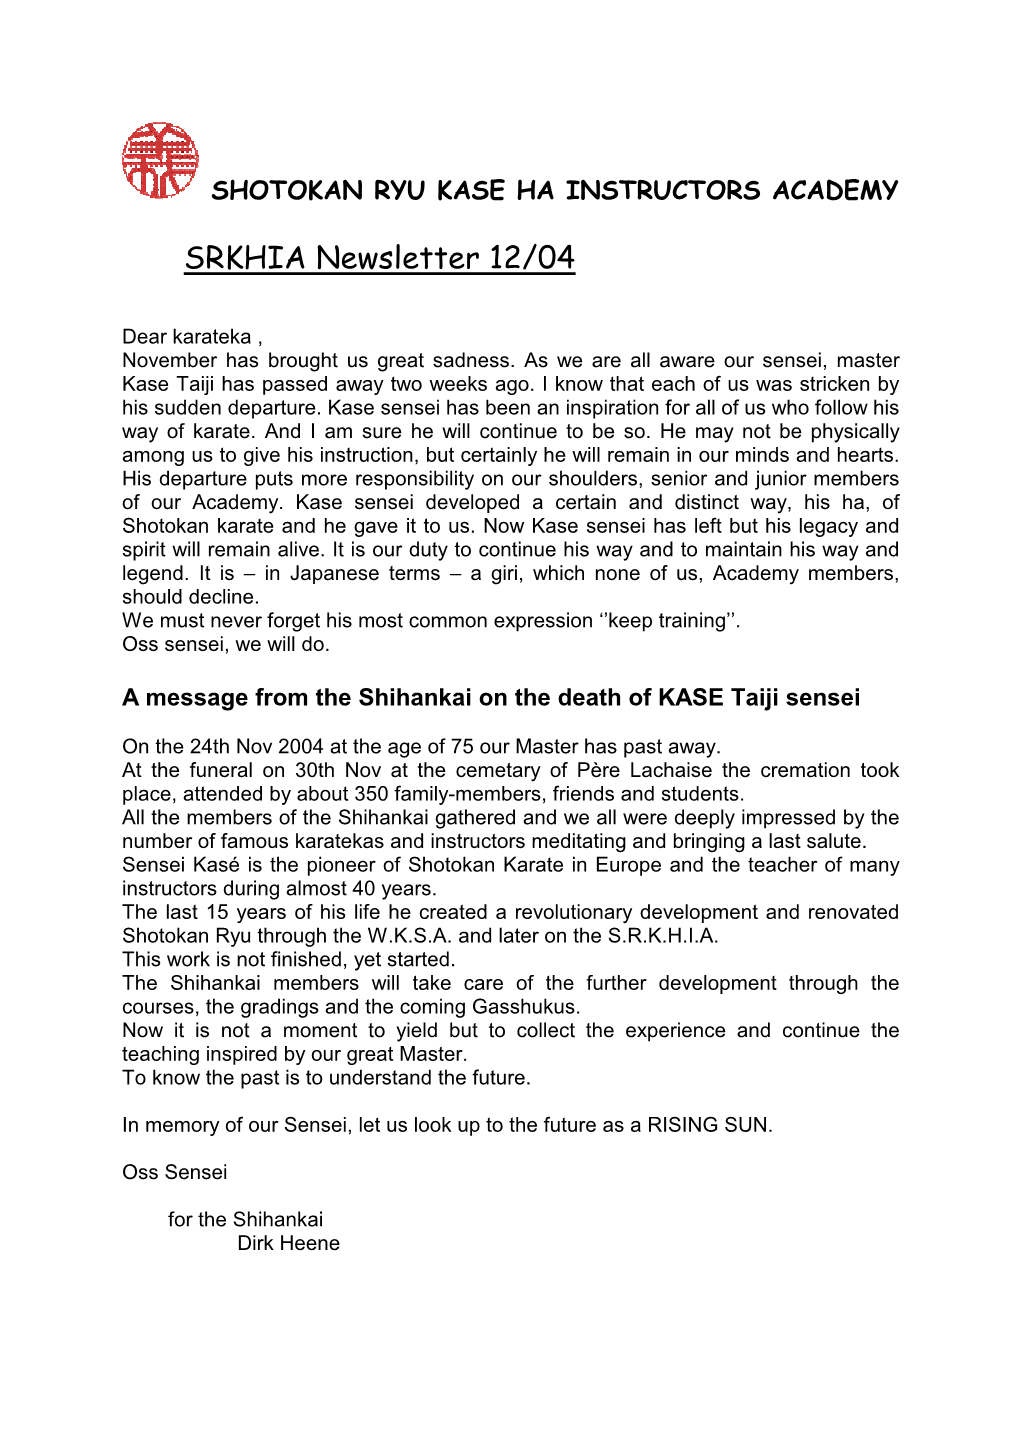 SRKHIA Newsletter 12/04